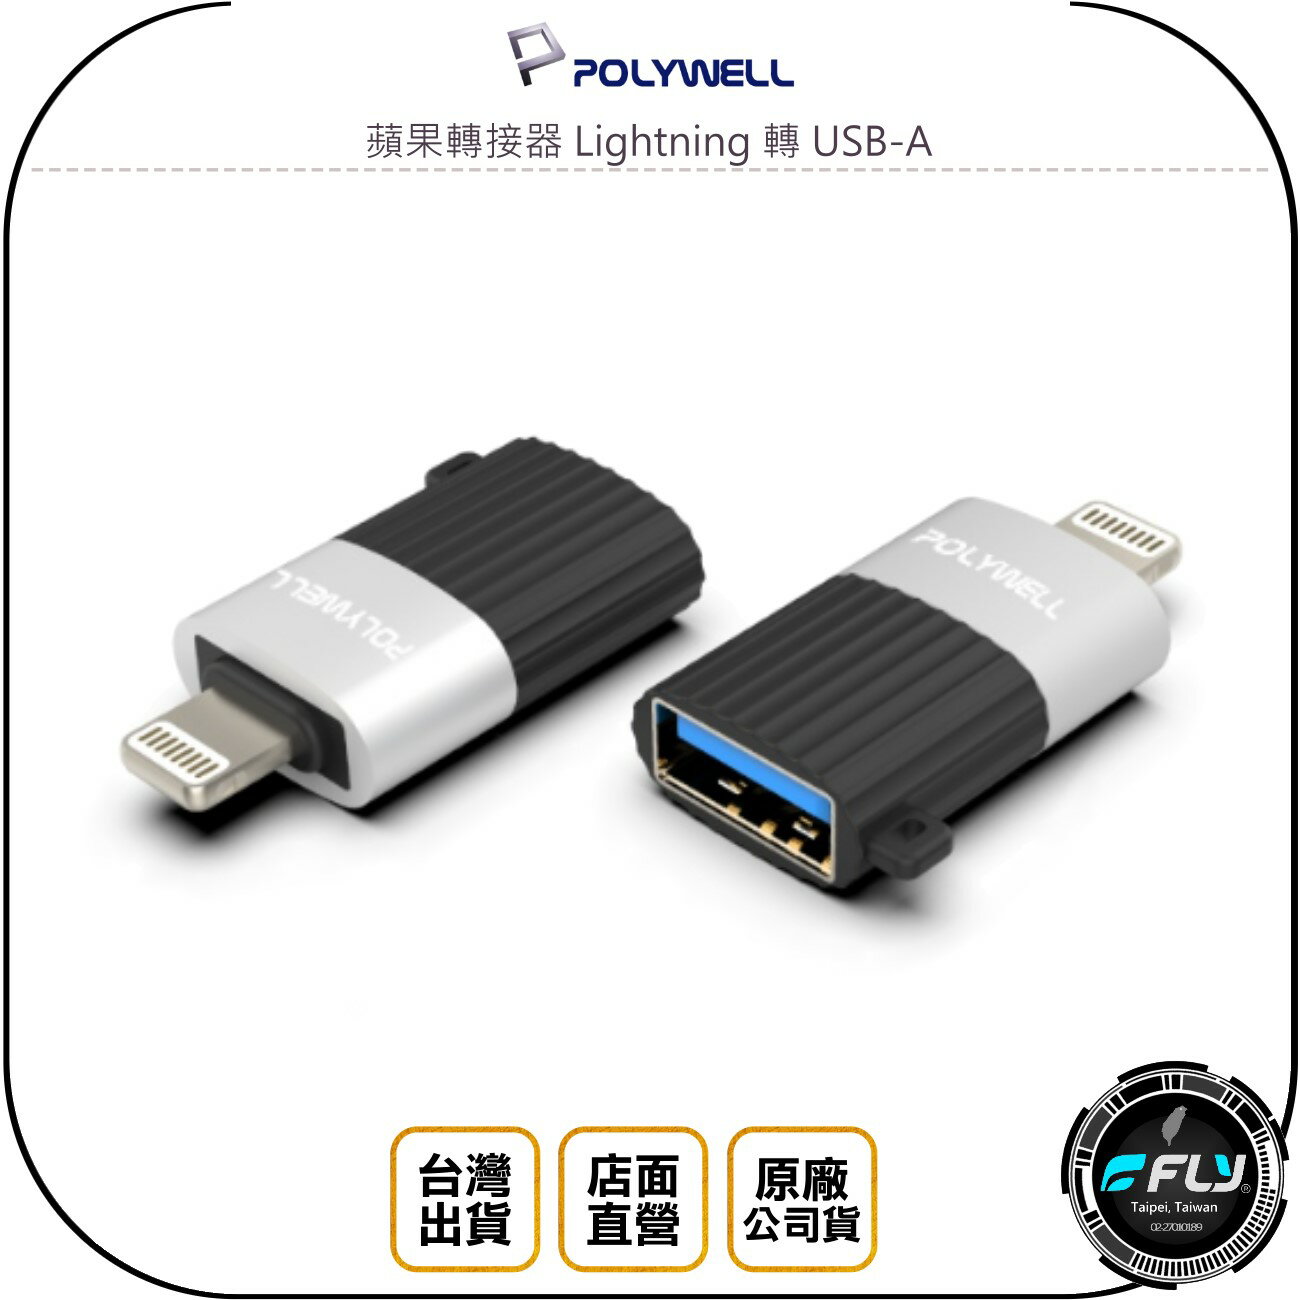 《飛翔無線3C》POLYWELL 寶利威爾 蘋果轉接器 Lightning 轉 USB-A◉iPhone轉USB